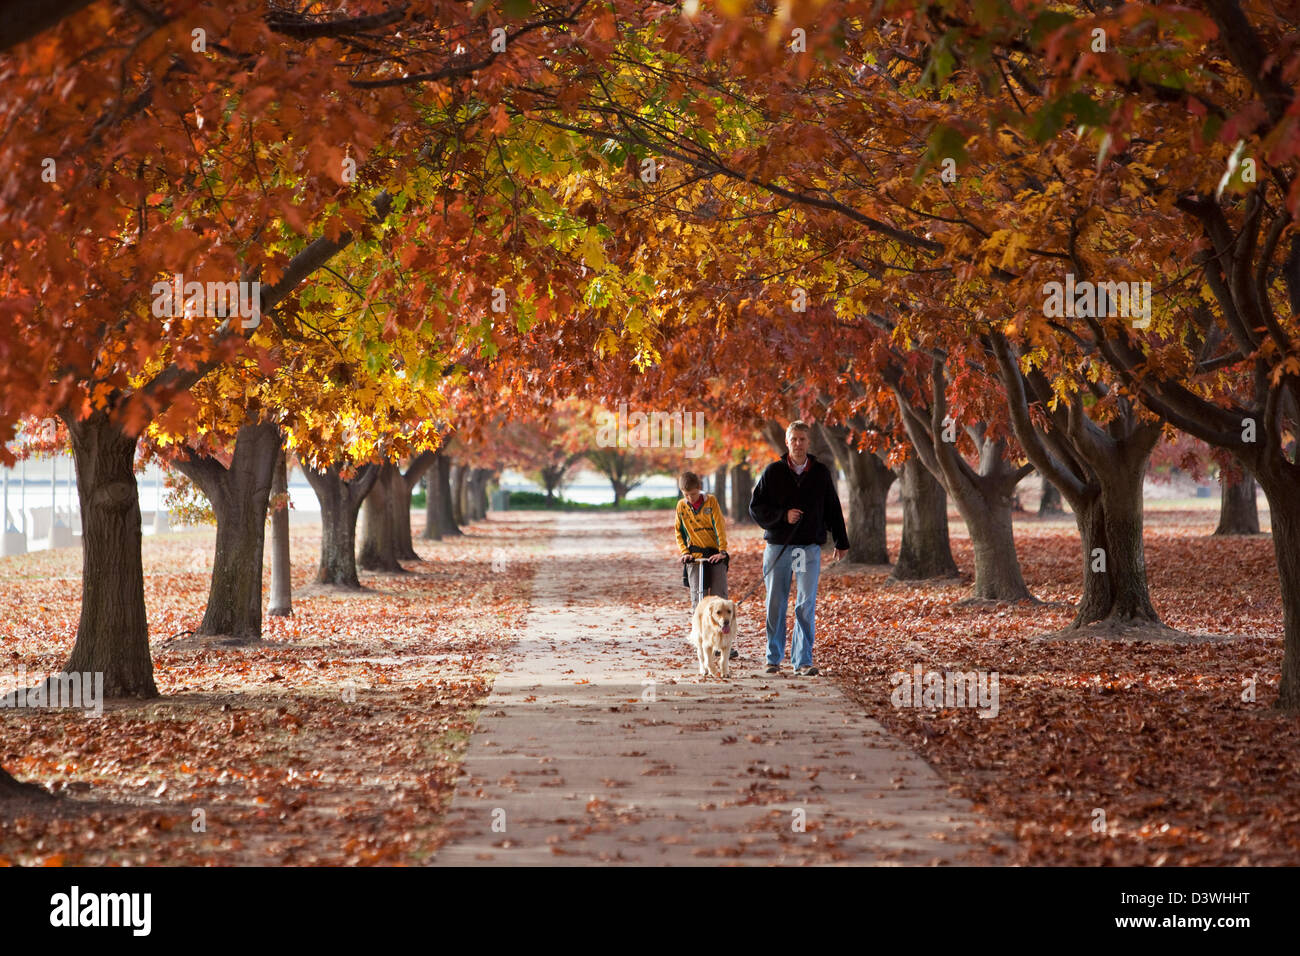 Père et fils marchant à travers le parc en automne. Parkes, Canberra, Territoire de la capitale australienne (ACT), l'Australie Banque D'Images